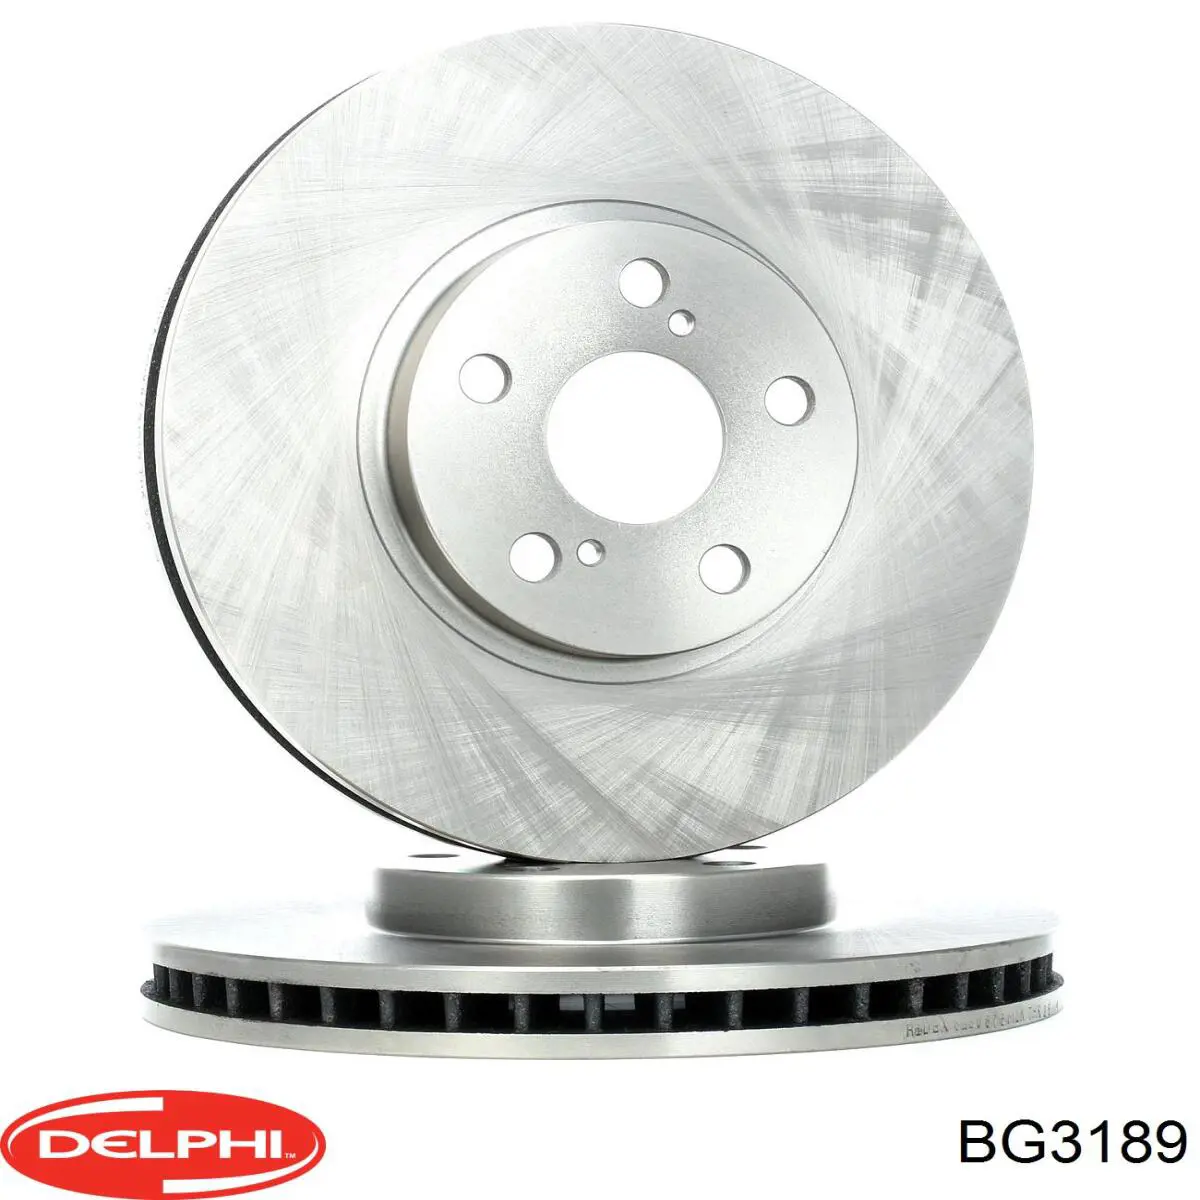 BG3189 Delphi disco do freio dianteiro